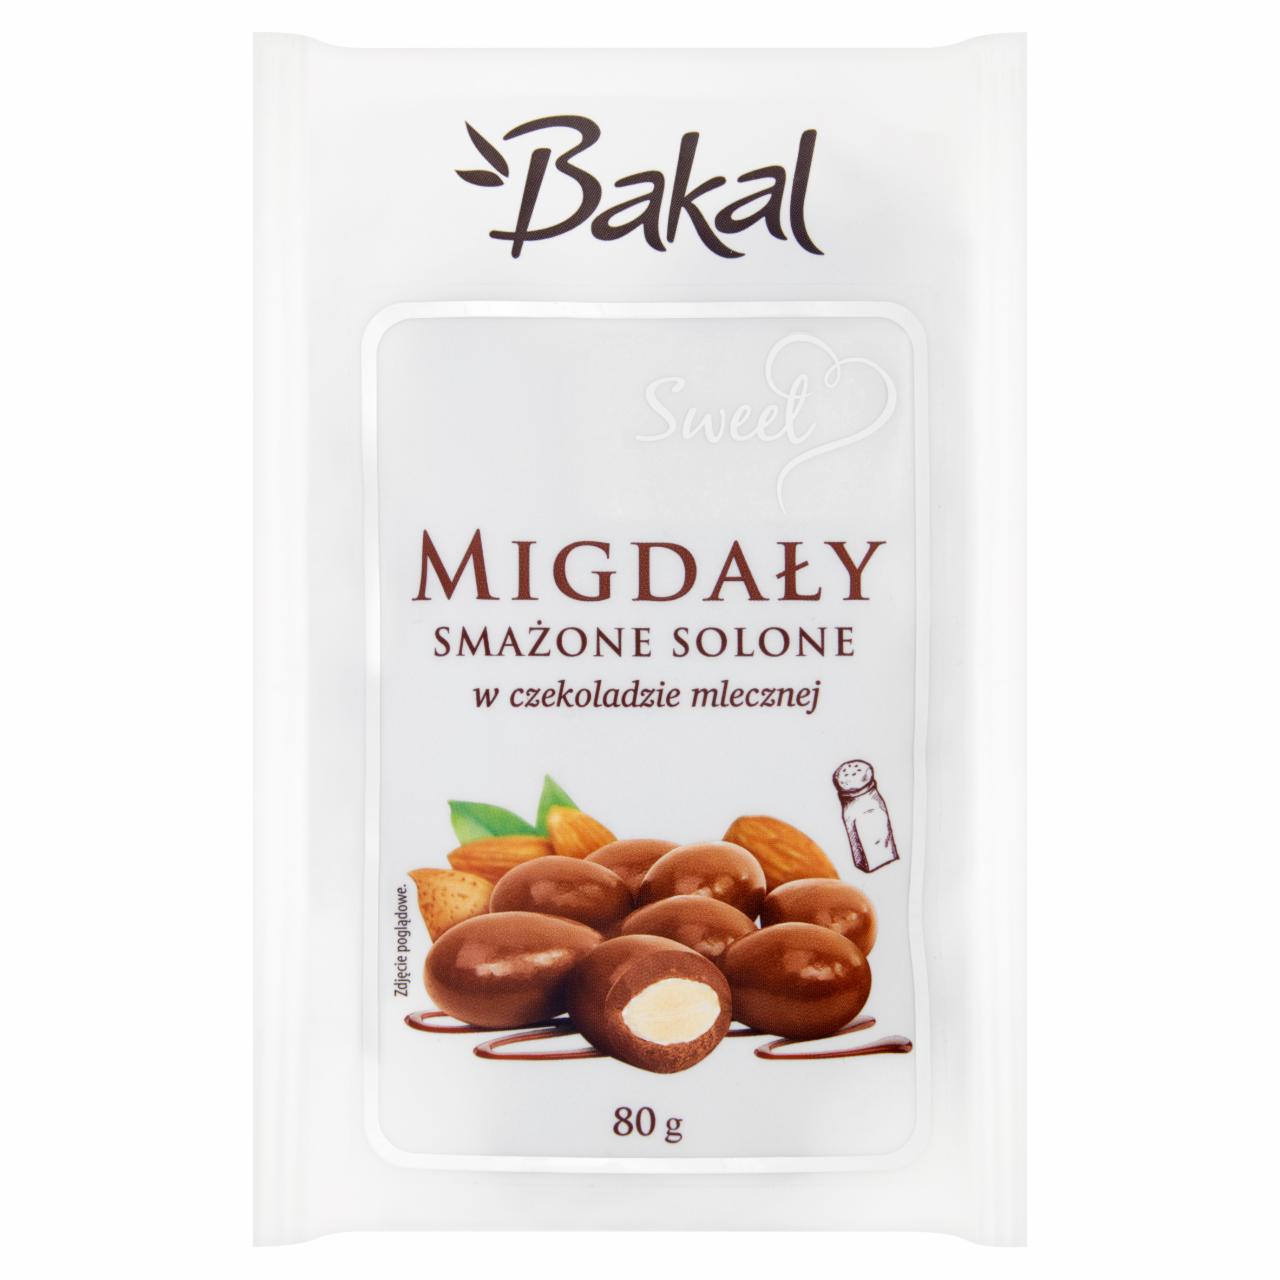 Zdjęcia - Bakal Sweet Migdały smażone solone w czekoladzie mlecznej 80 g